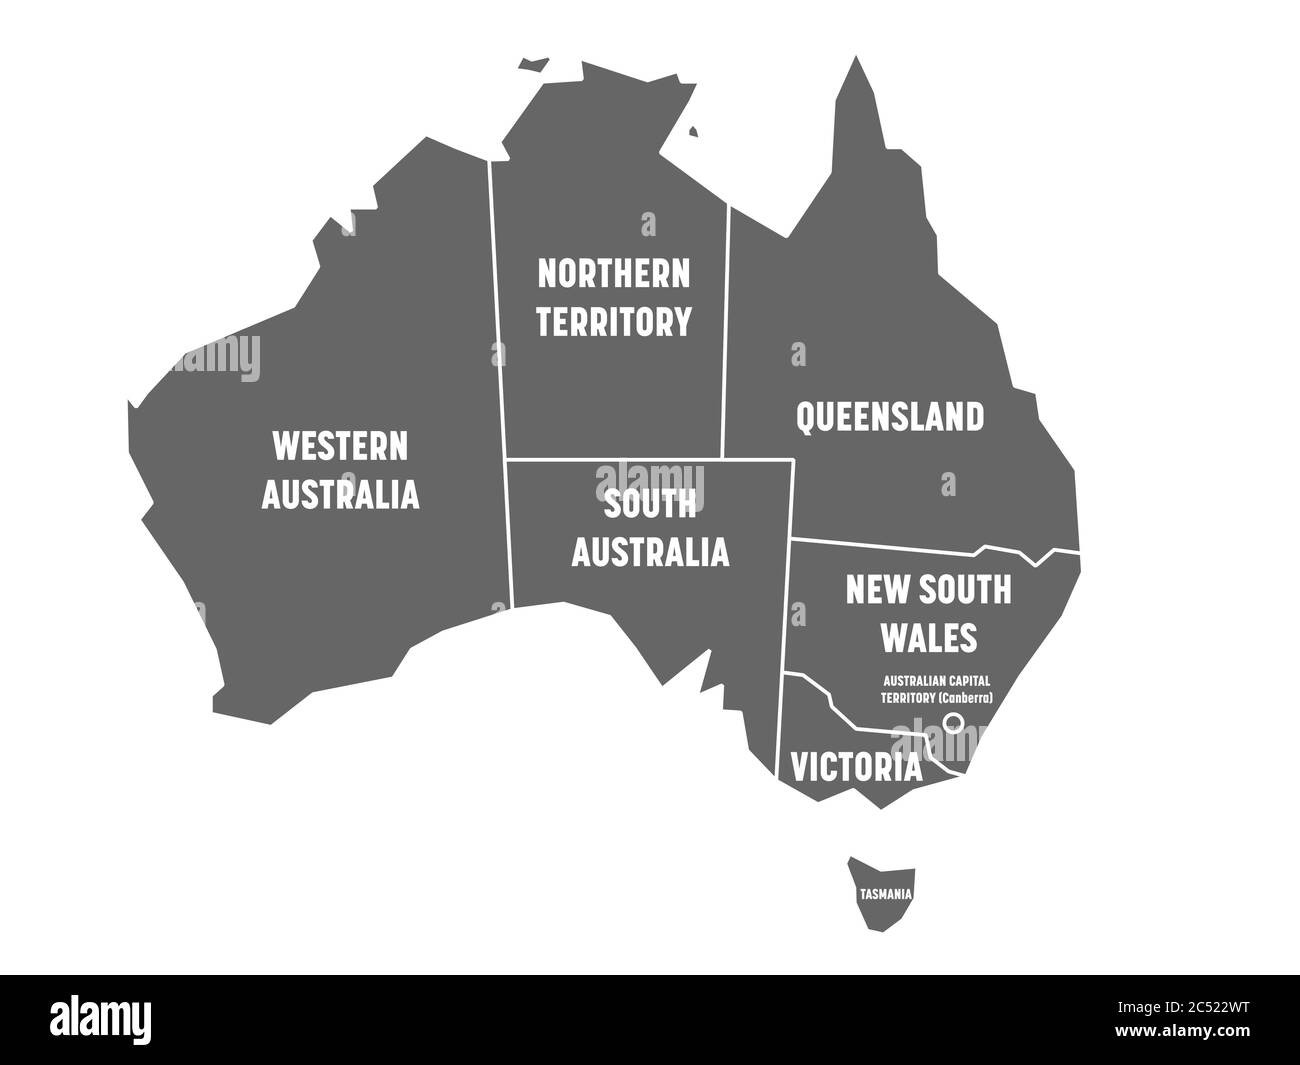 Carte simplifiée de l'Australie divisée en États et territoires. Carte plate grise avec bordures blanches et étiquettes blanches. Illustration vectorielle. Illustration de Vecteur